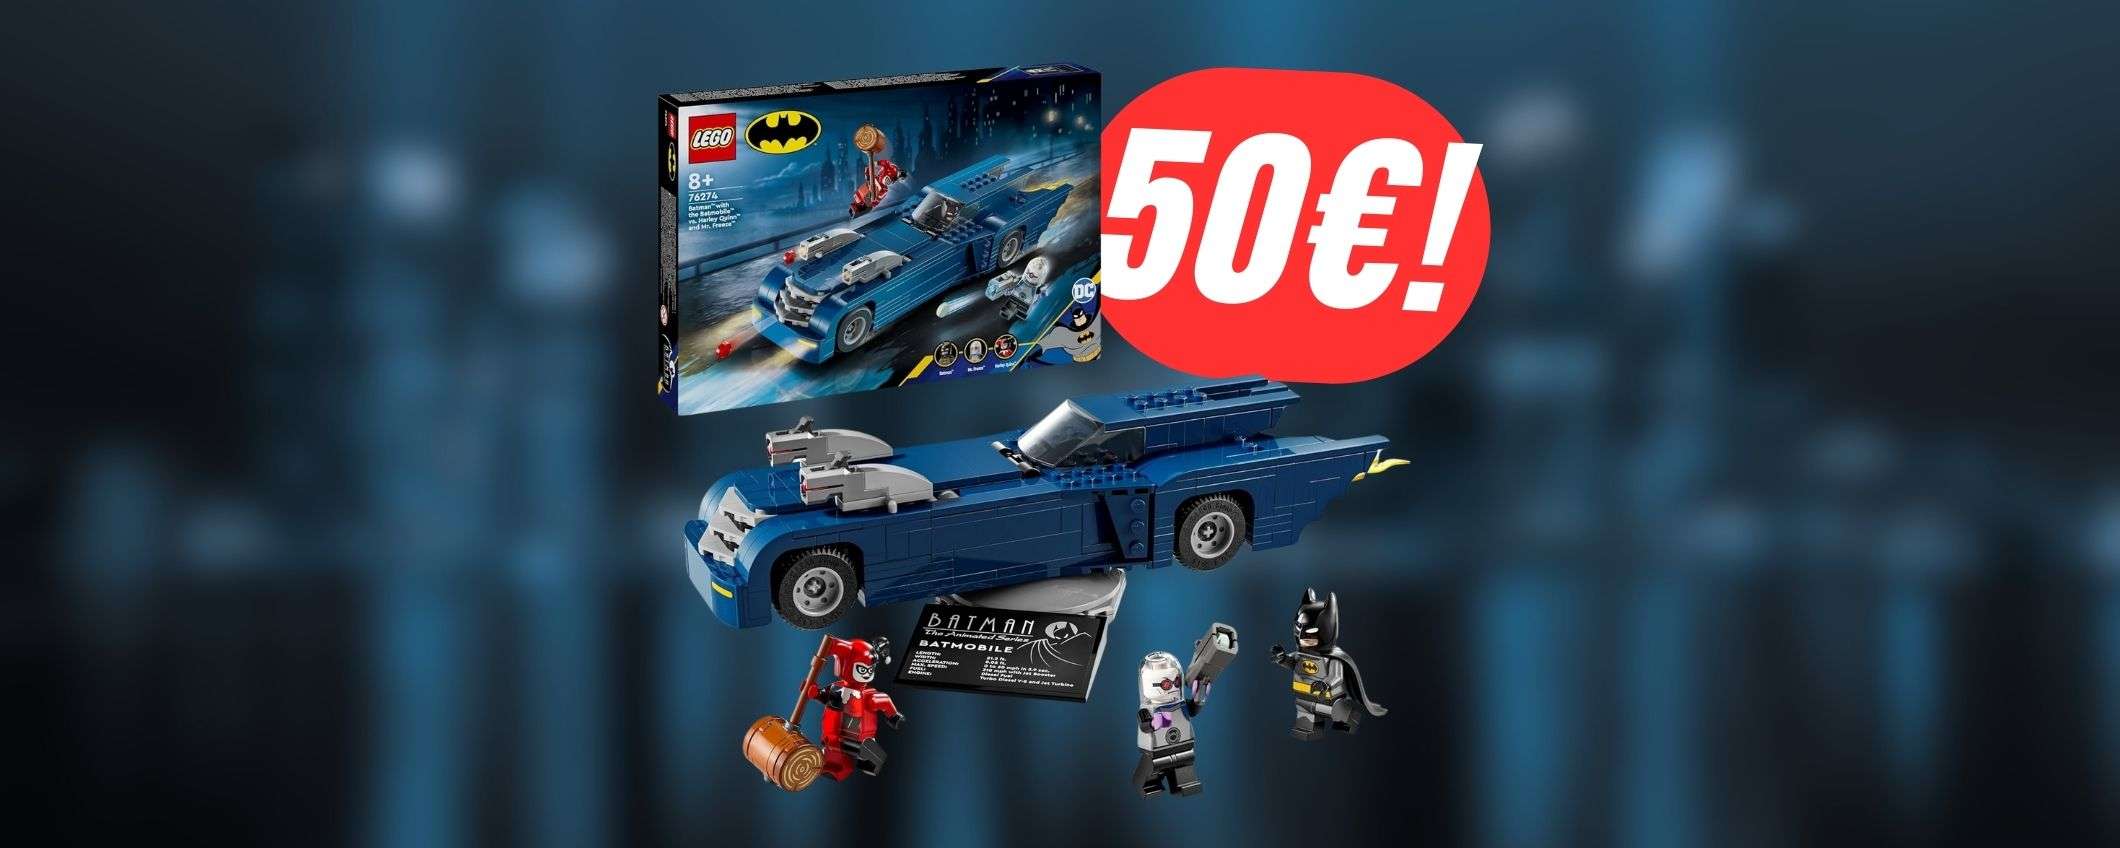 MINIMO STORICO per il set LEGO Batman (con la Batmobile!)